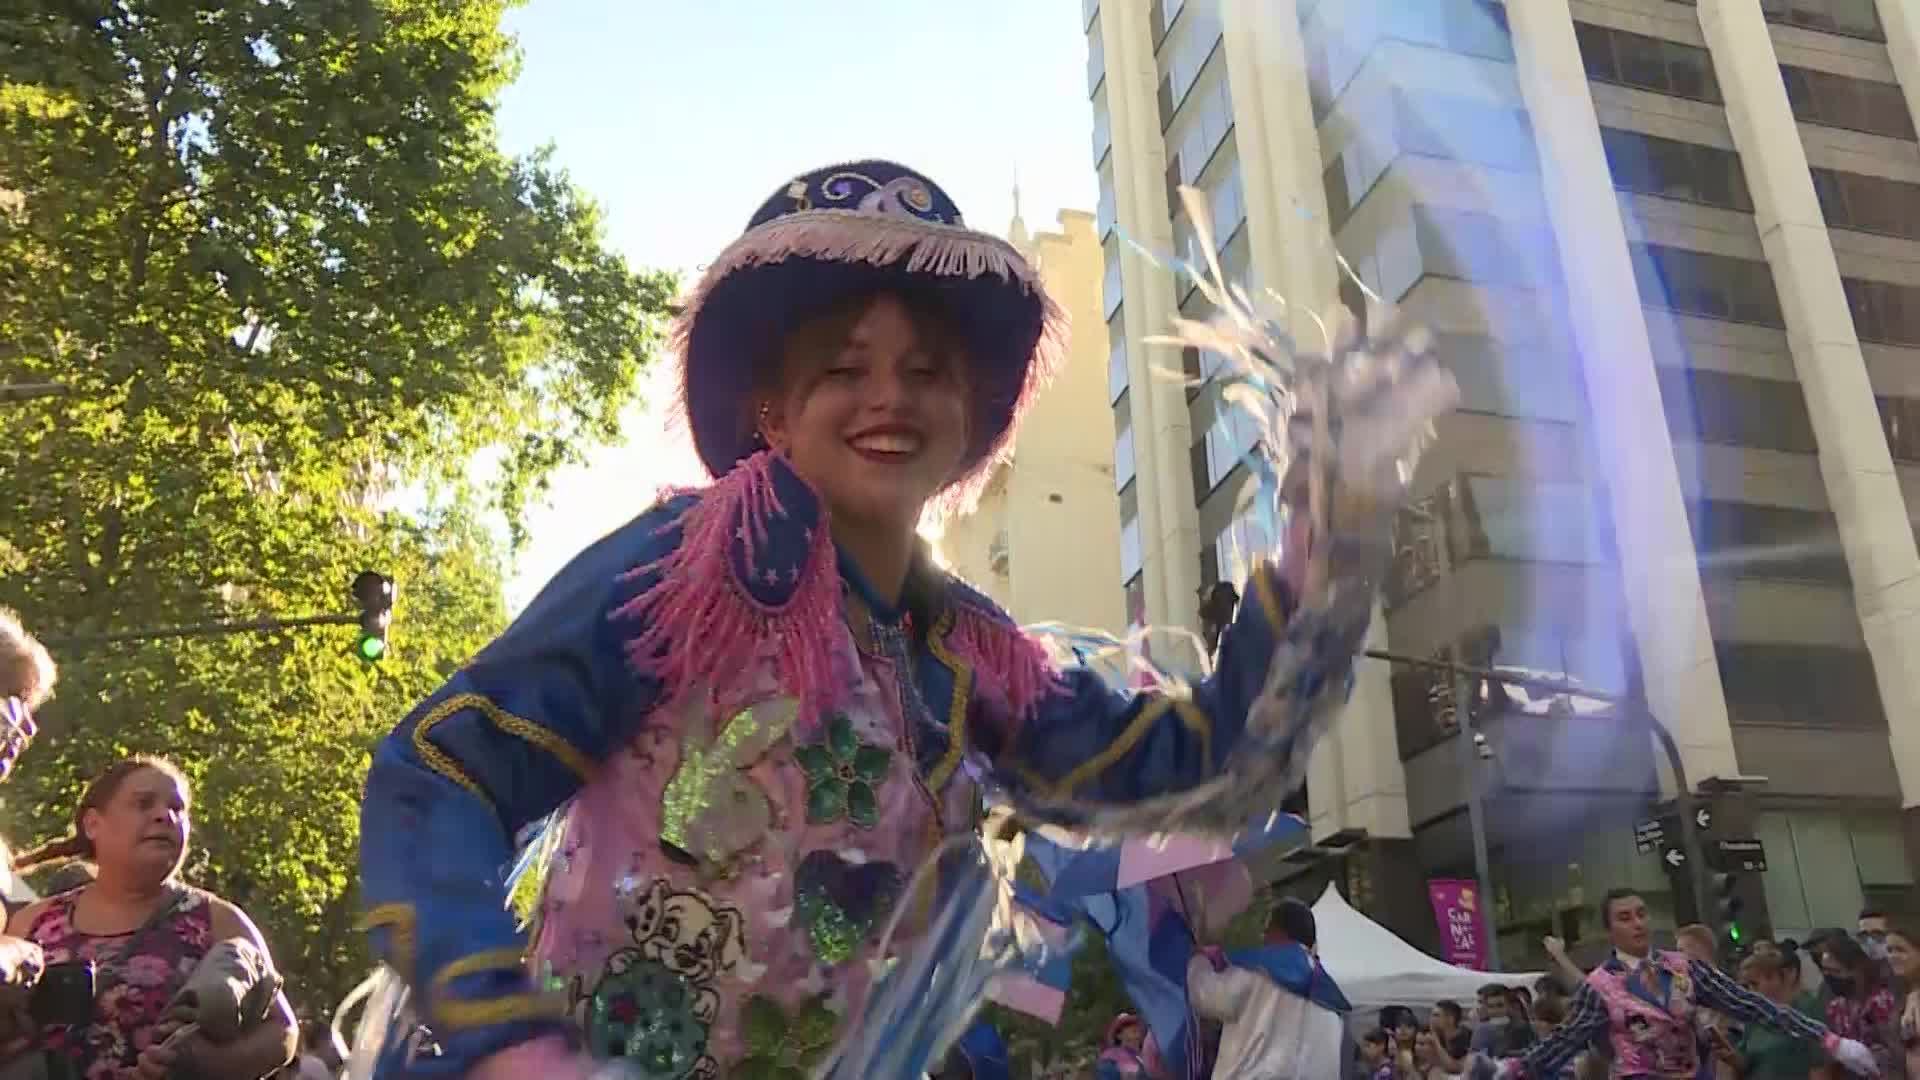 Capital de Argentina celebra el Carnaval con color, baile y música